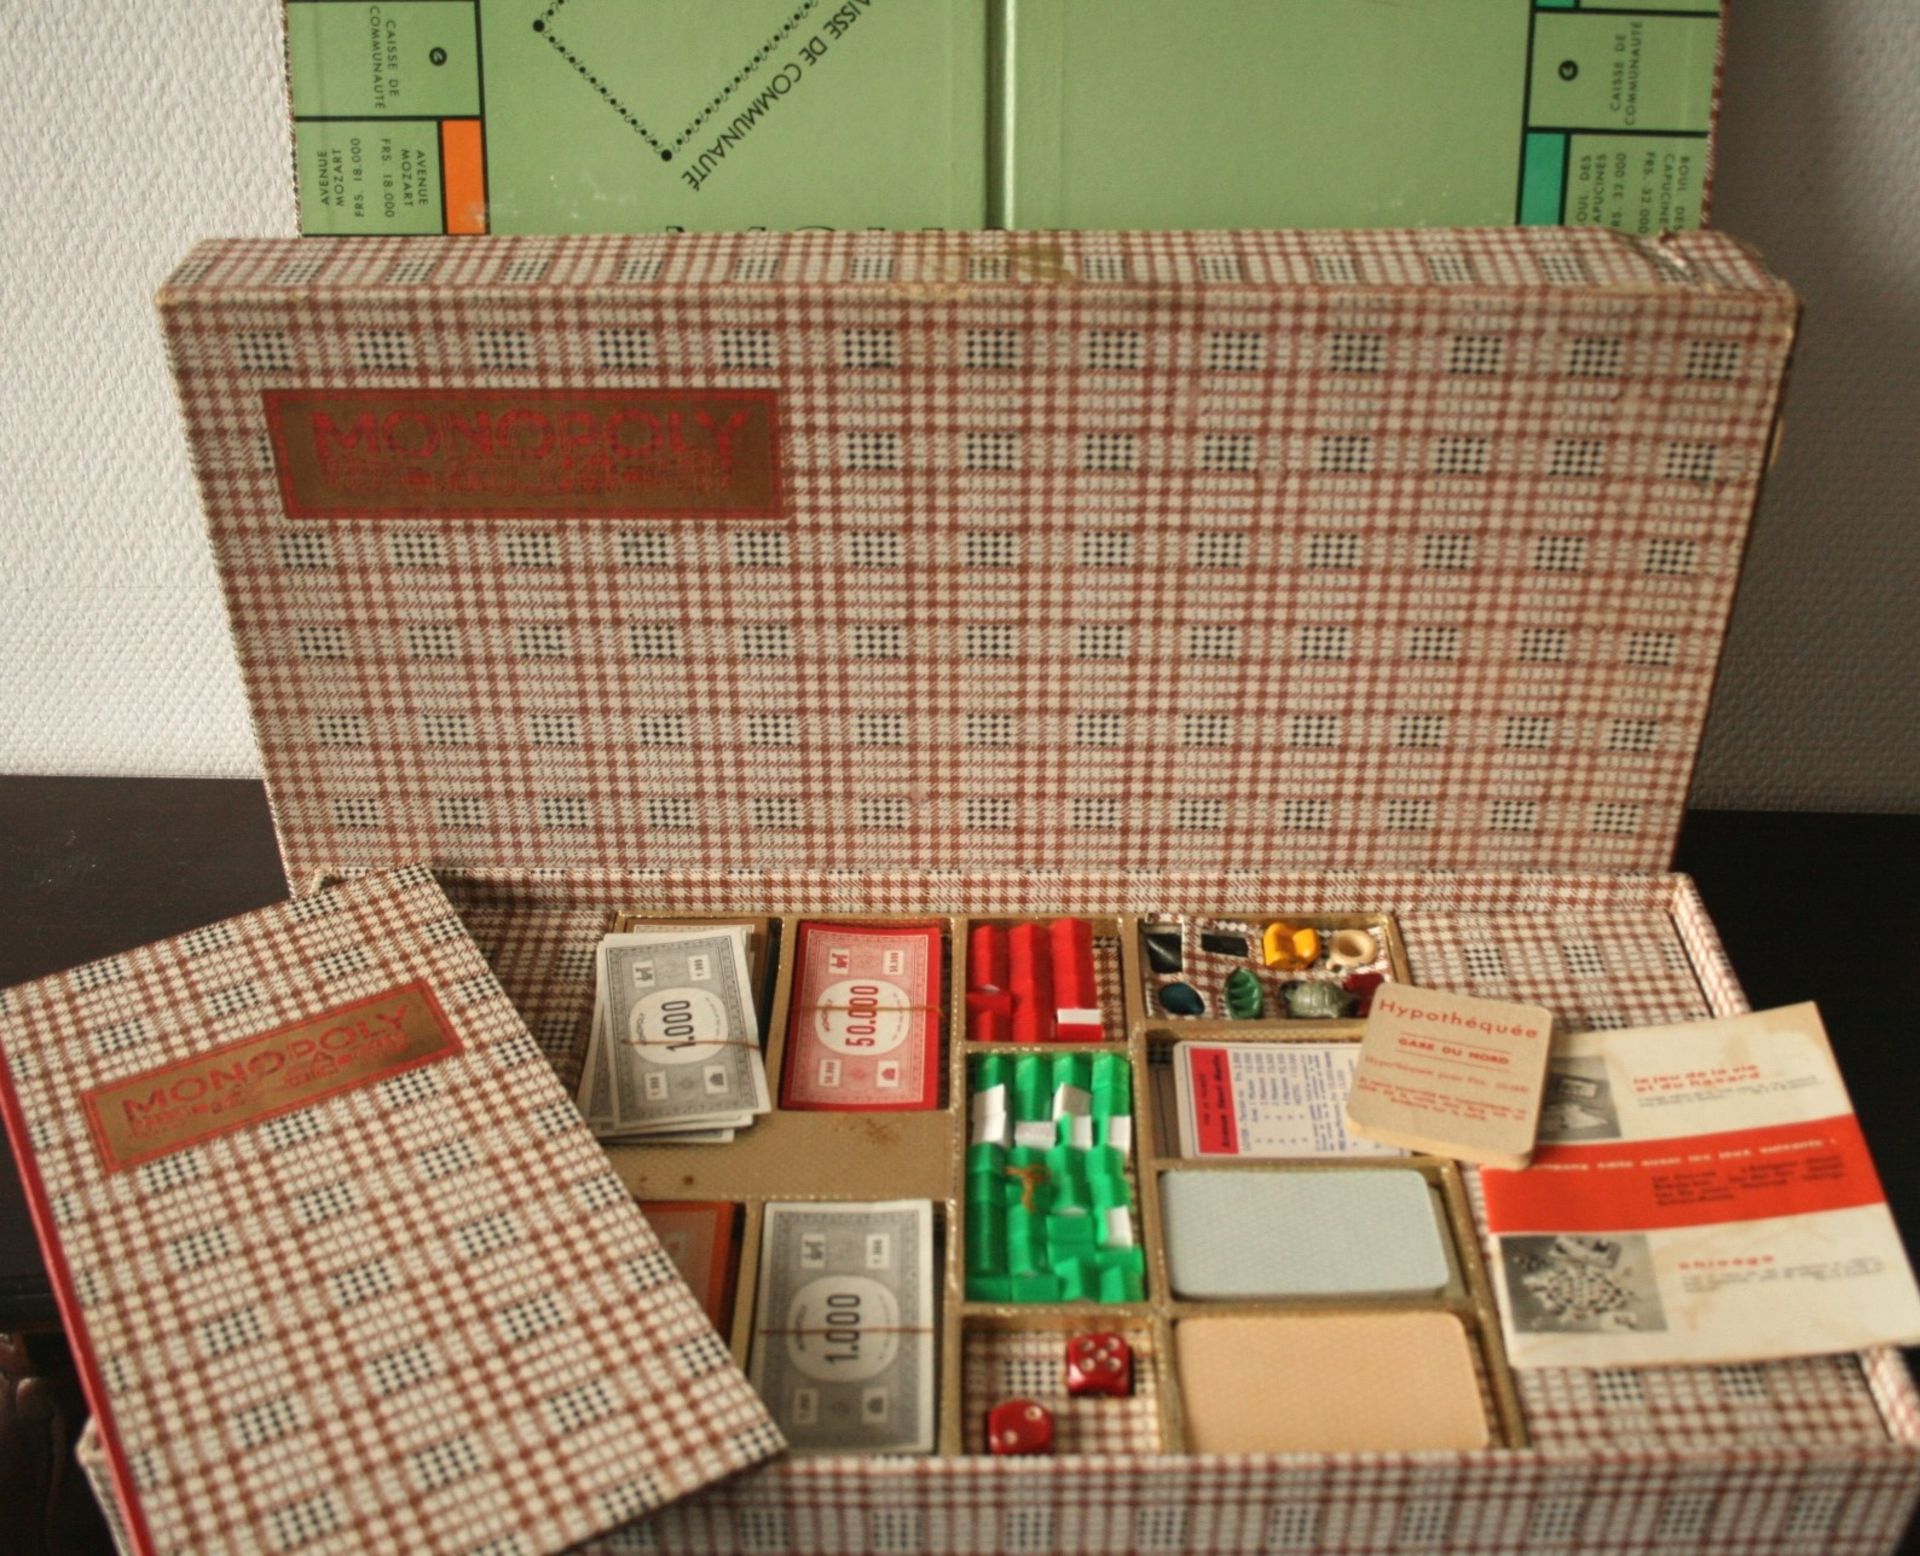 Splendide jeu de Monopoly (Paris) de 1956 dans une version de grand luxe chez MIRO [...]